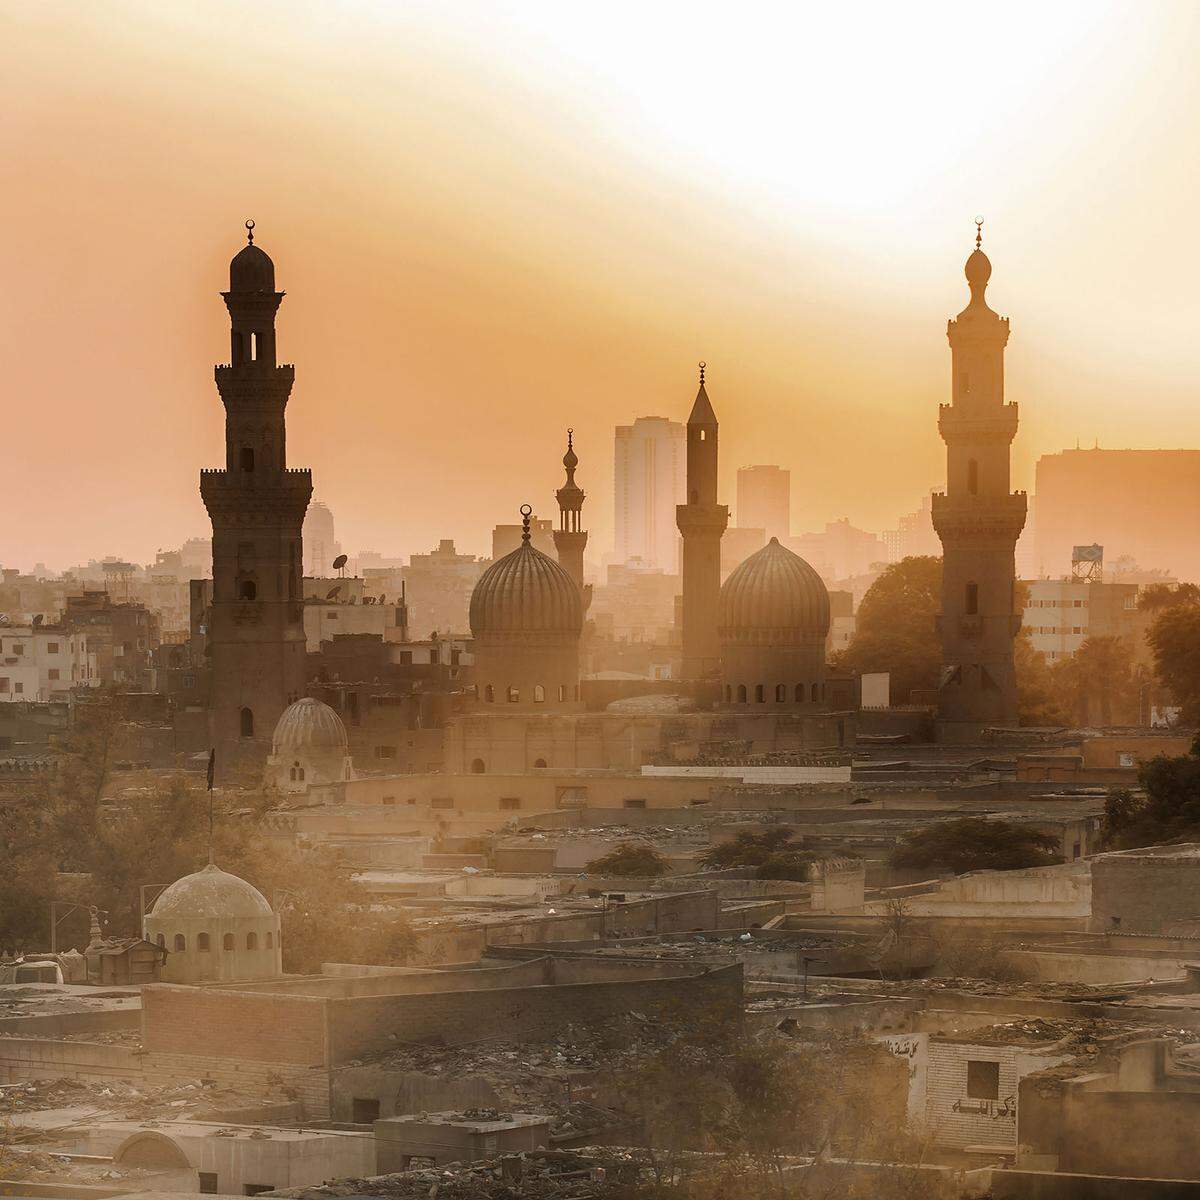 "Das alte Kairo in Ägypten" heißt dieses Foto.